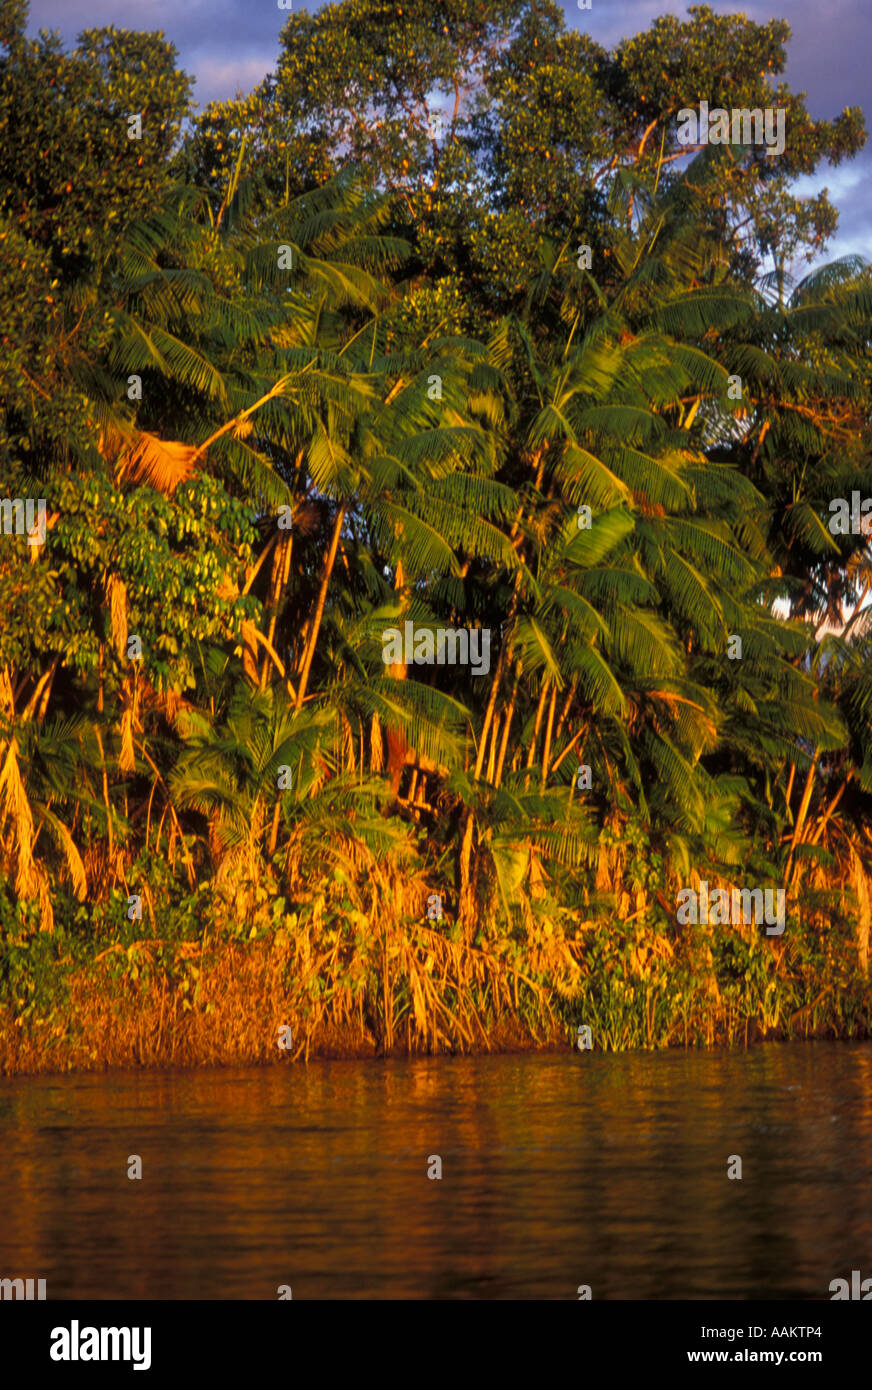 Açaizeiro (Acaizeiro) oder Açaizal (Acaizal) - Bäume Açaí (Acai Bäume) in den Rahmen oder Rio Preguiças, Brasilien Stockfoto